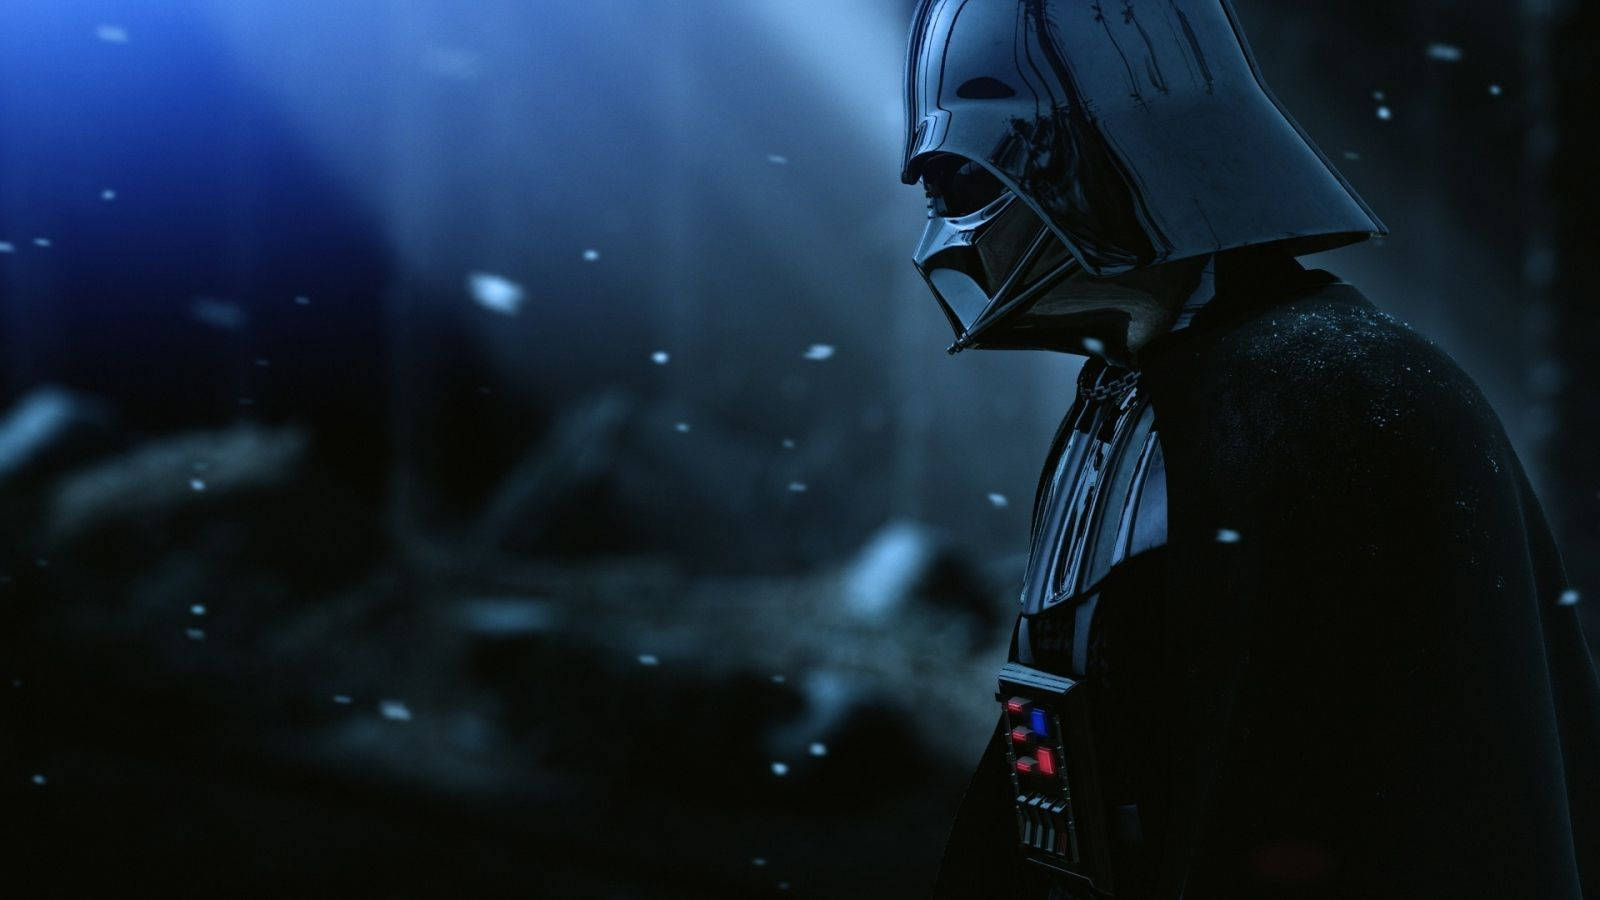 Darth Vader Villain Poster